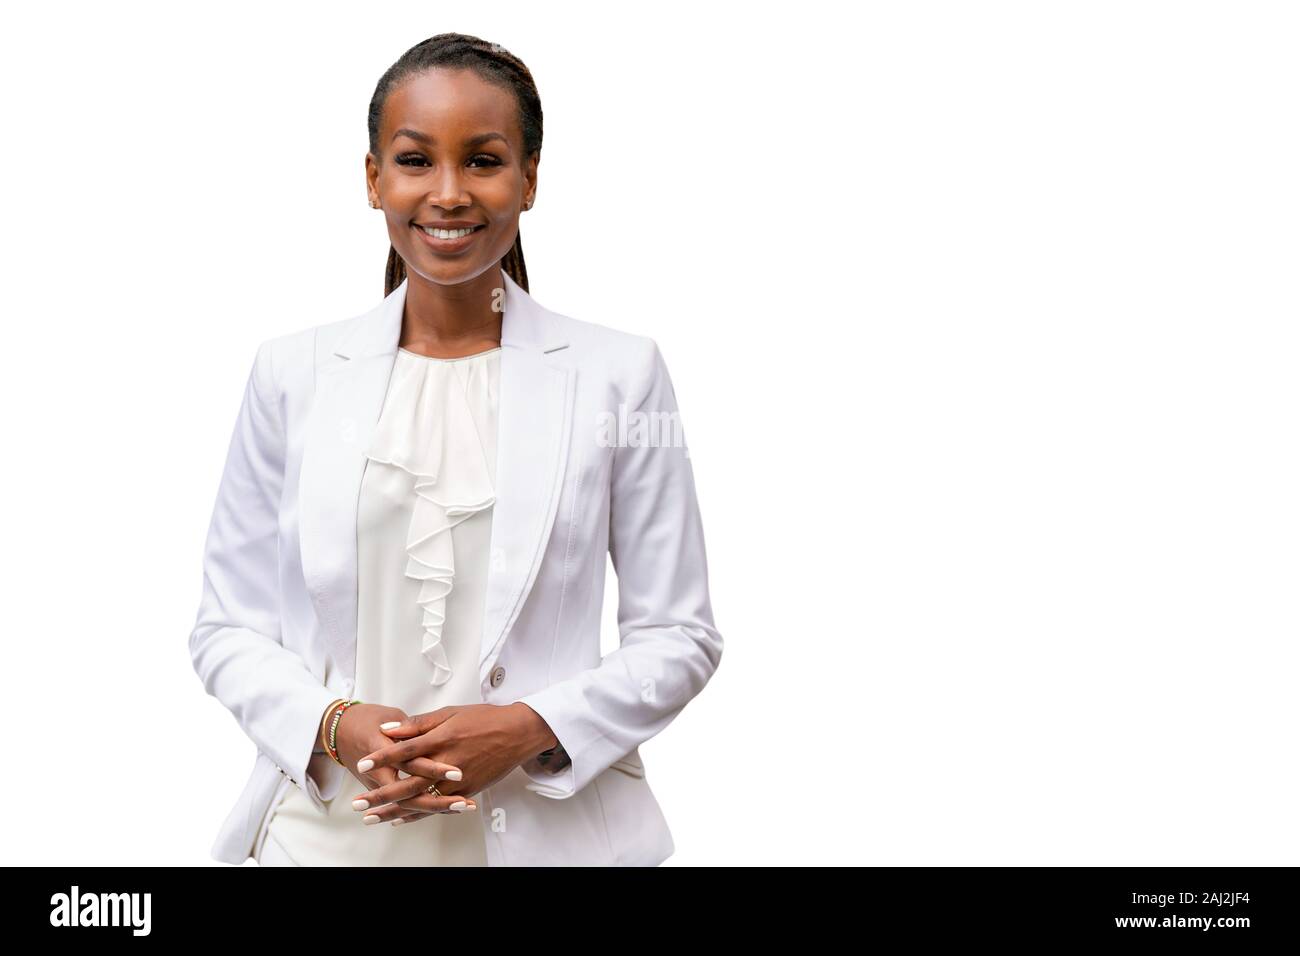 African American business persona, genuina, accogliente, caloroso, rappresentante, associare, su sfondo bianco Foto Stock